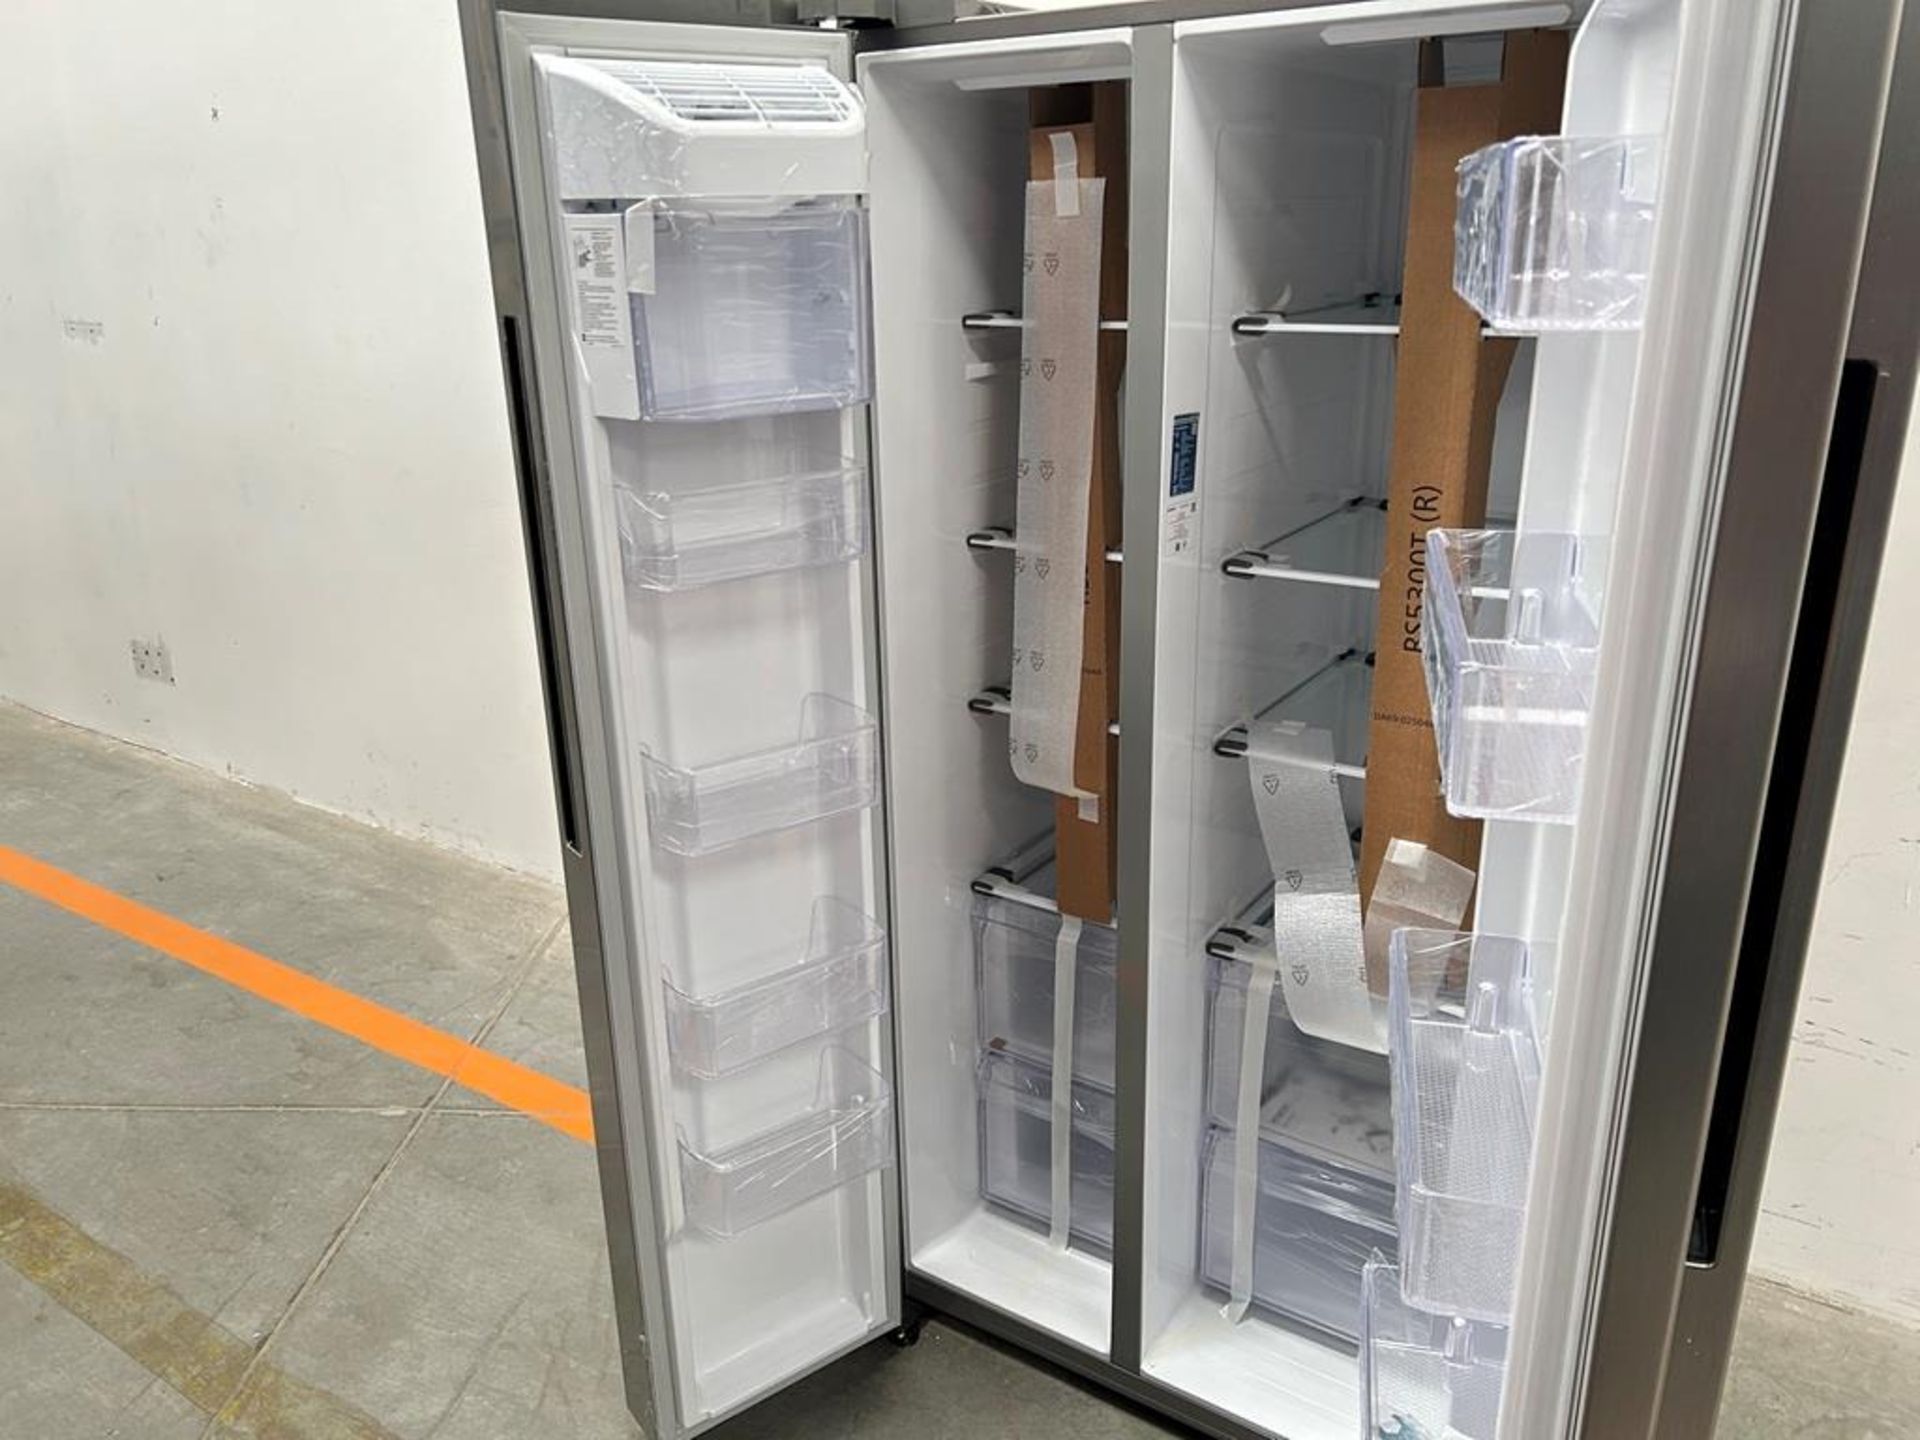 (NUEVO) Refrigerador Marca SAMSUNG, Modelo RS28A5F61S9, Serie 000015V, Color GRIS - Image 6 of 10